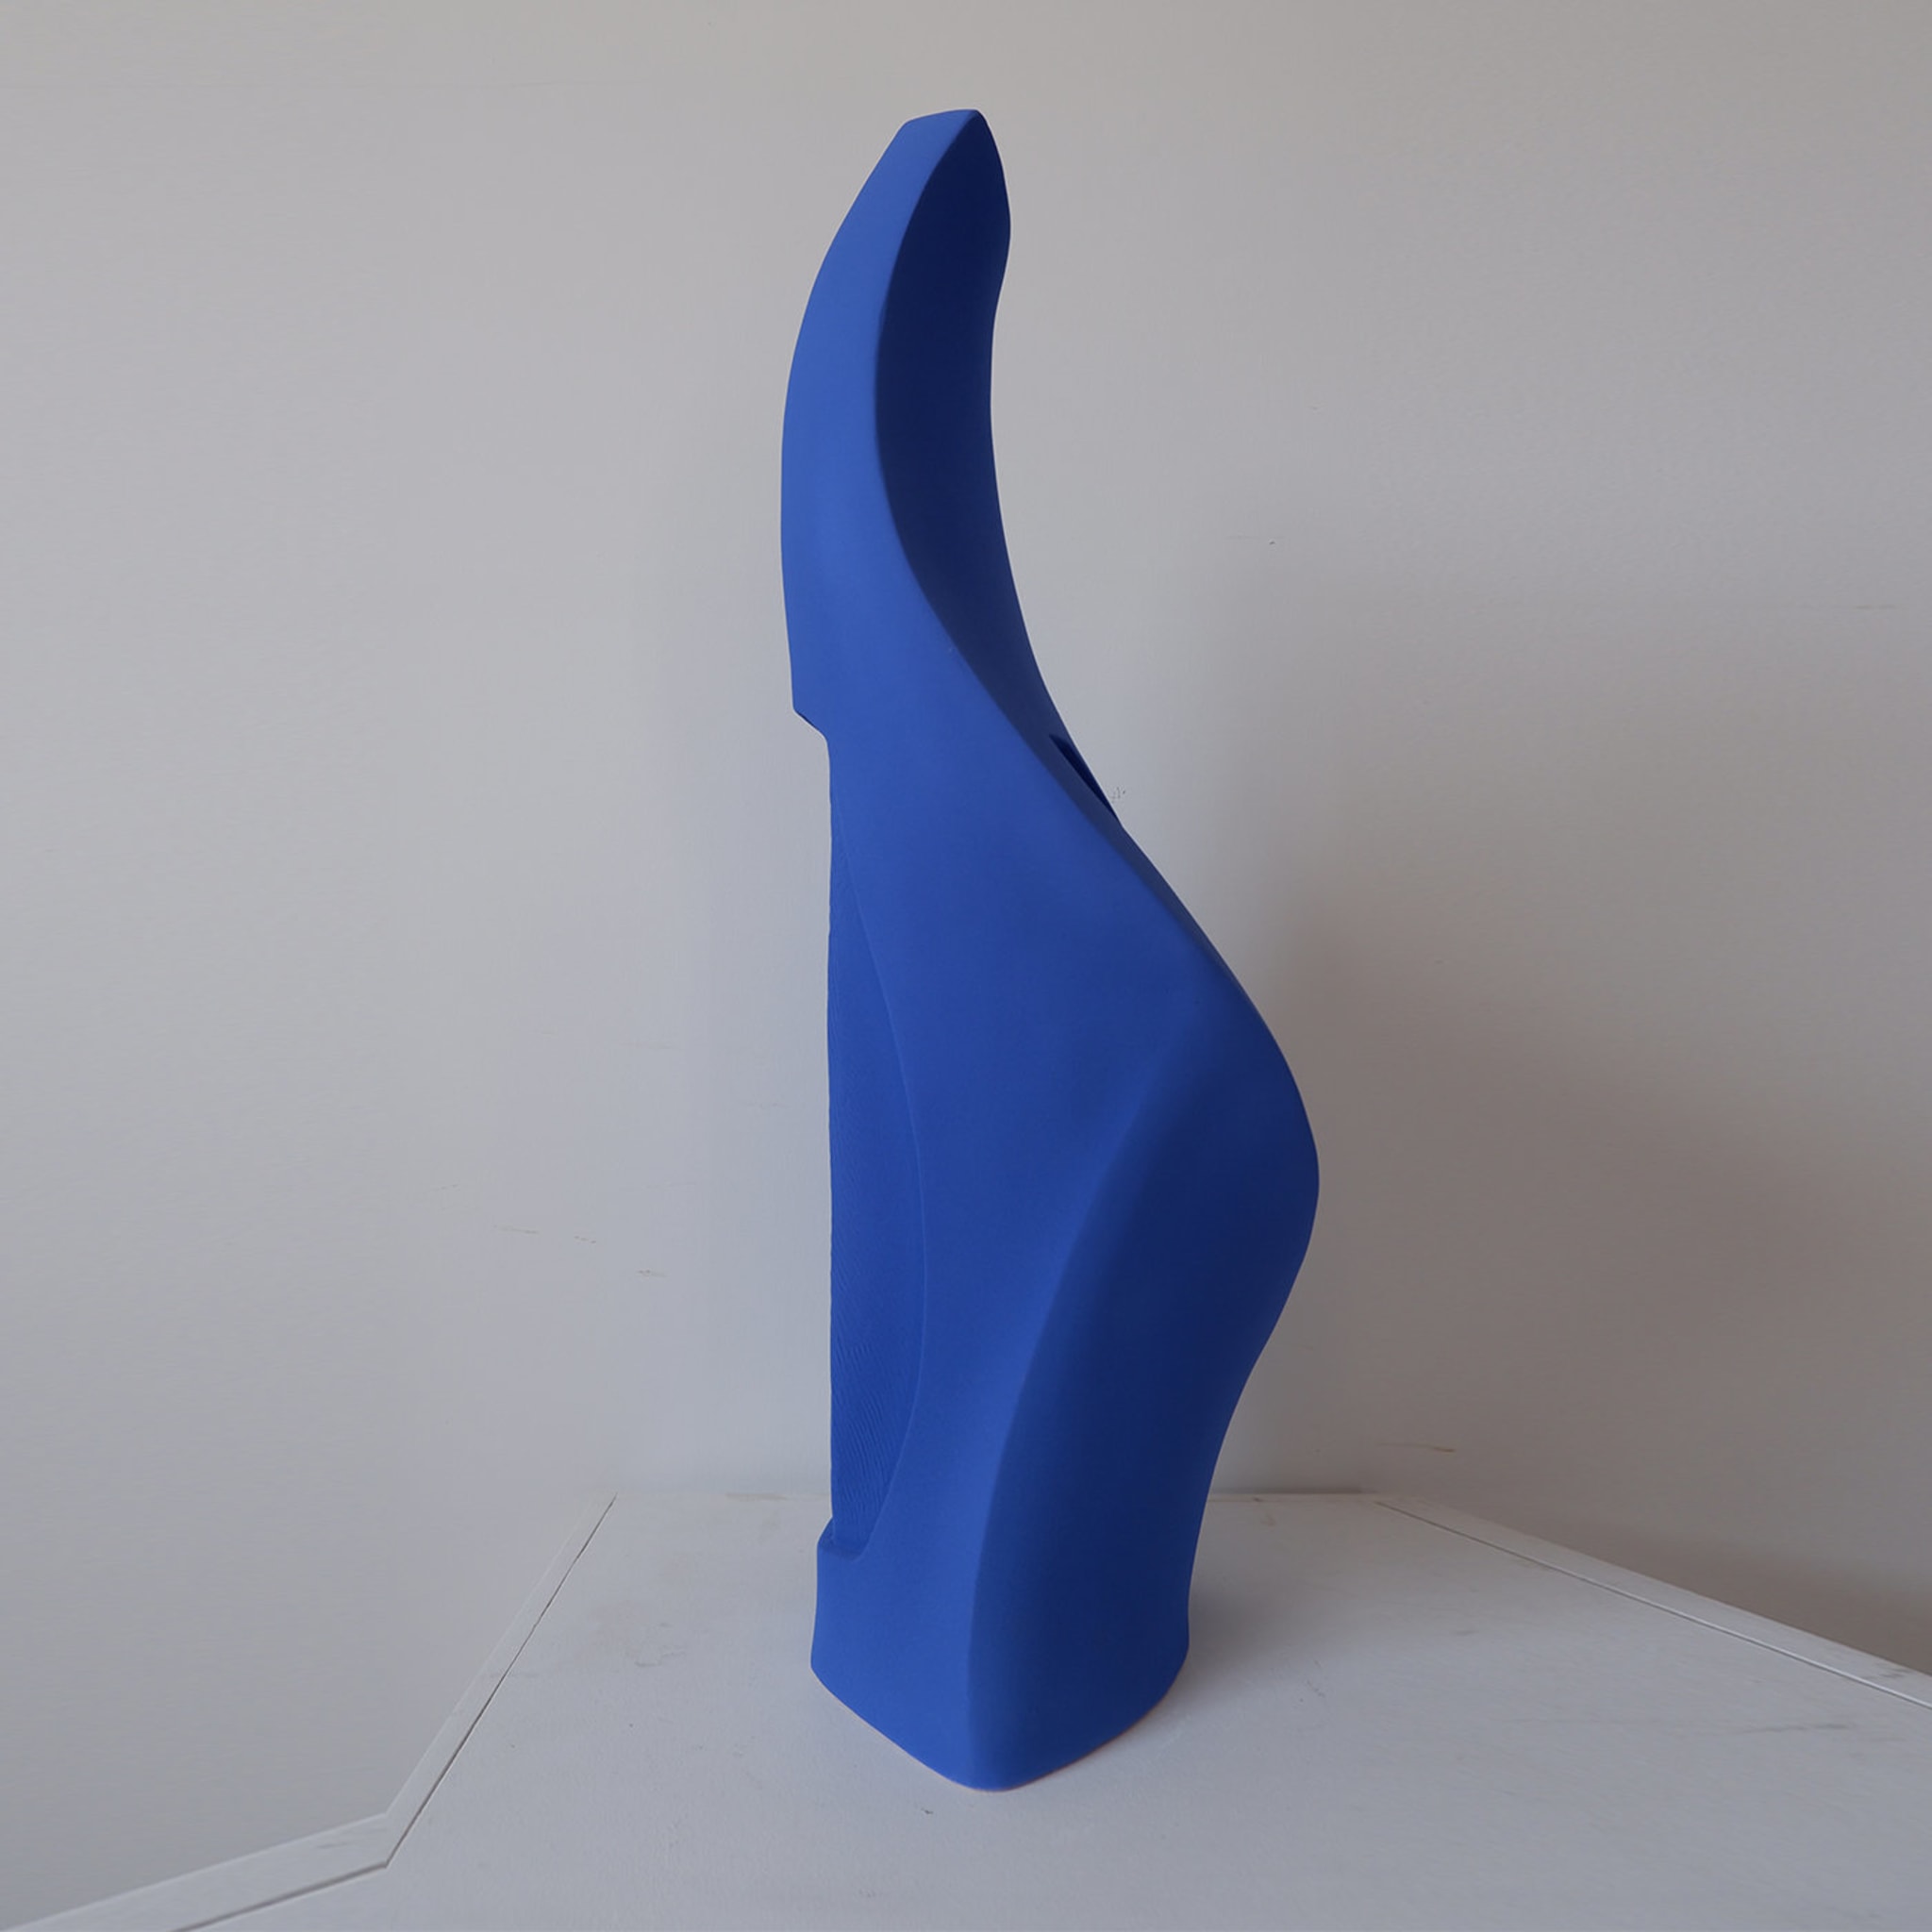 Blue Demeter Vase #4 - Alternative view 1